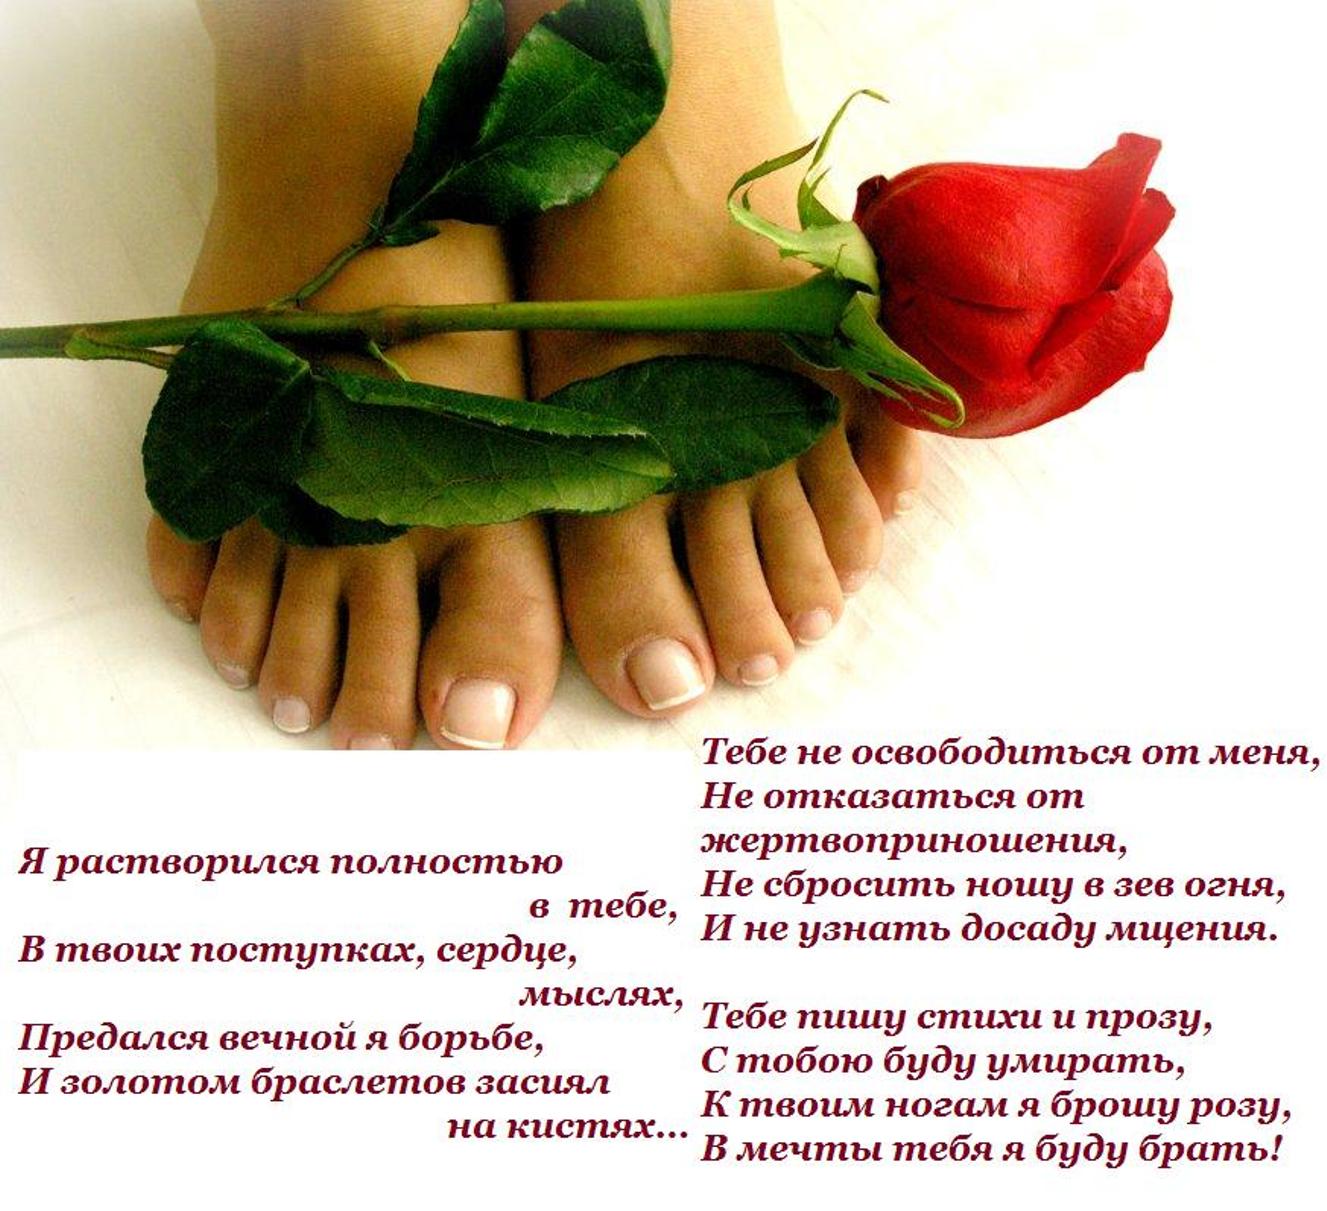 Бейби к твоим ногам я сыпал. Цветы к ногам женщины. Розы у ног женщины. Цветы к ногам любимой.